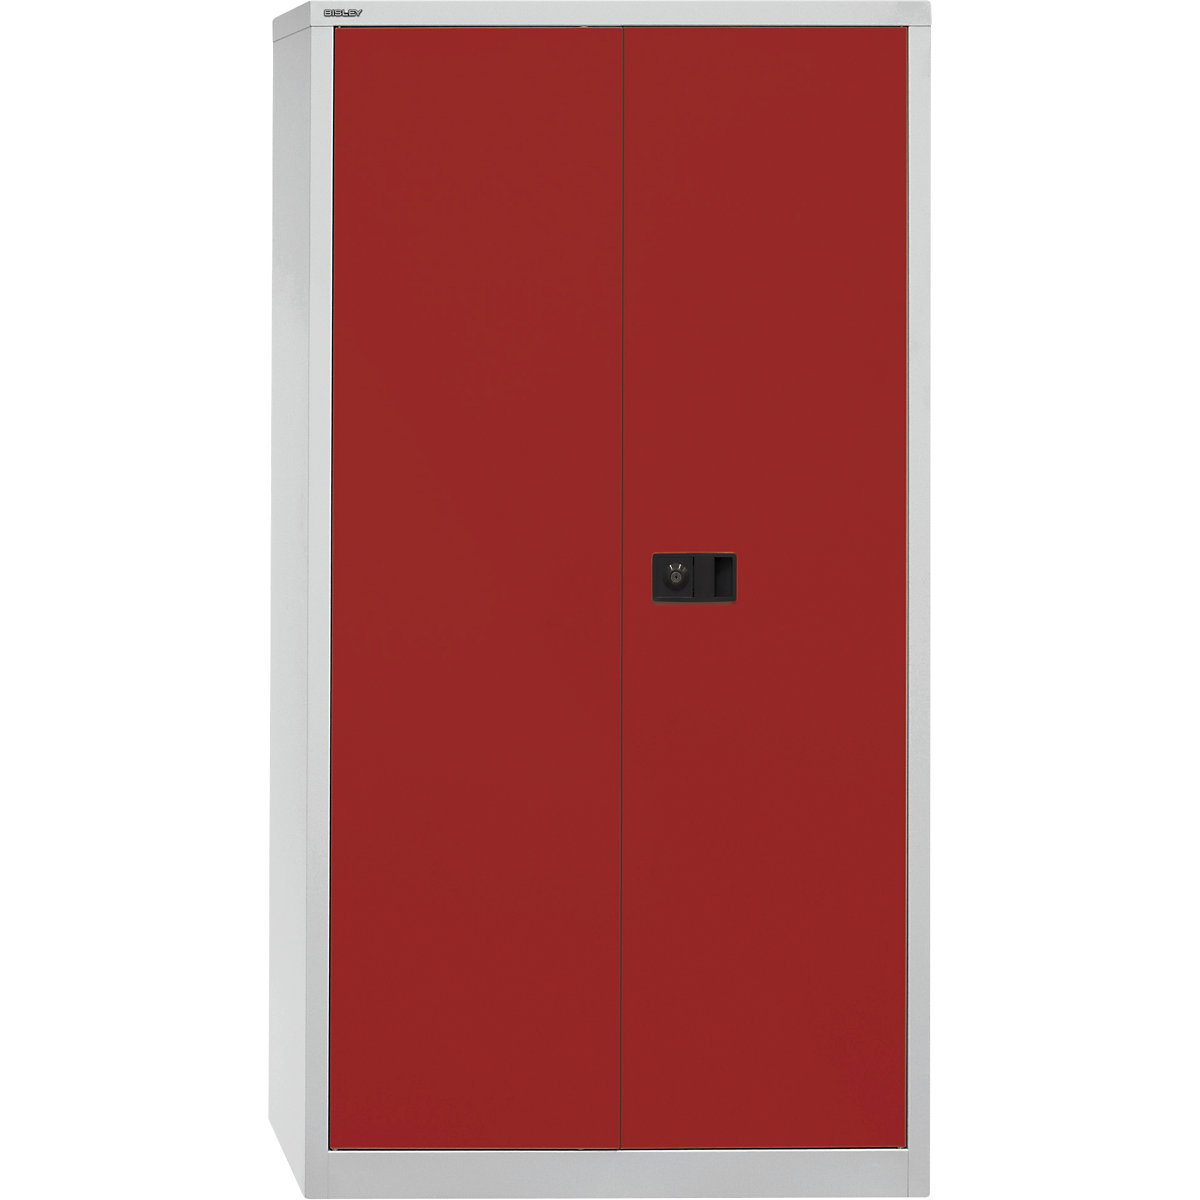 UNIVERSAL skriňa s krídlovými dverami – BISLEY, v x š x h 1806 x 914 x 400 mm, 3 pozinkované police, 4 výšky zakladačov, svetlošedá / kardinálska červená-5